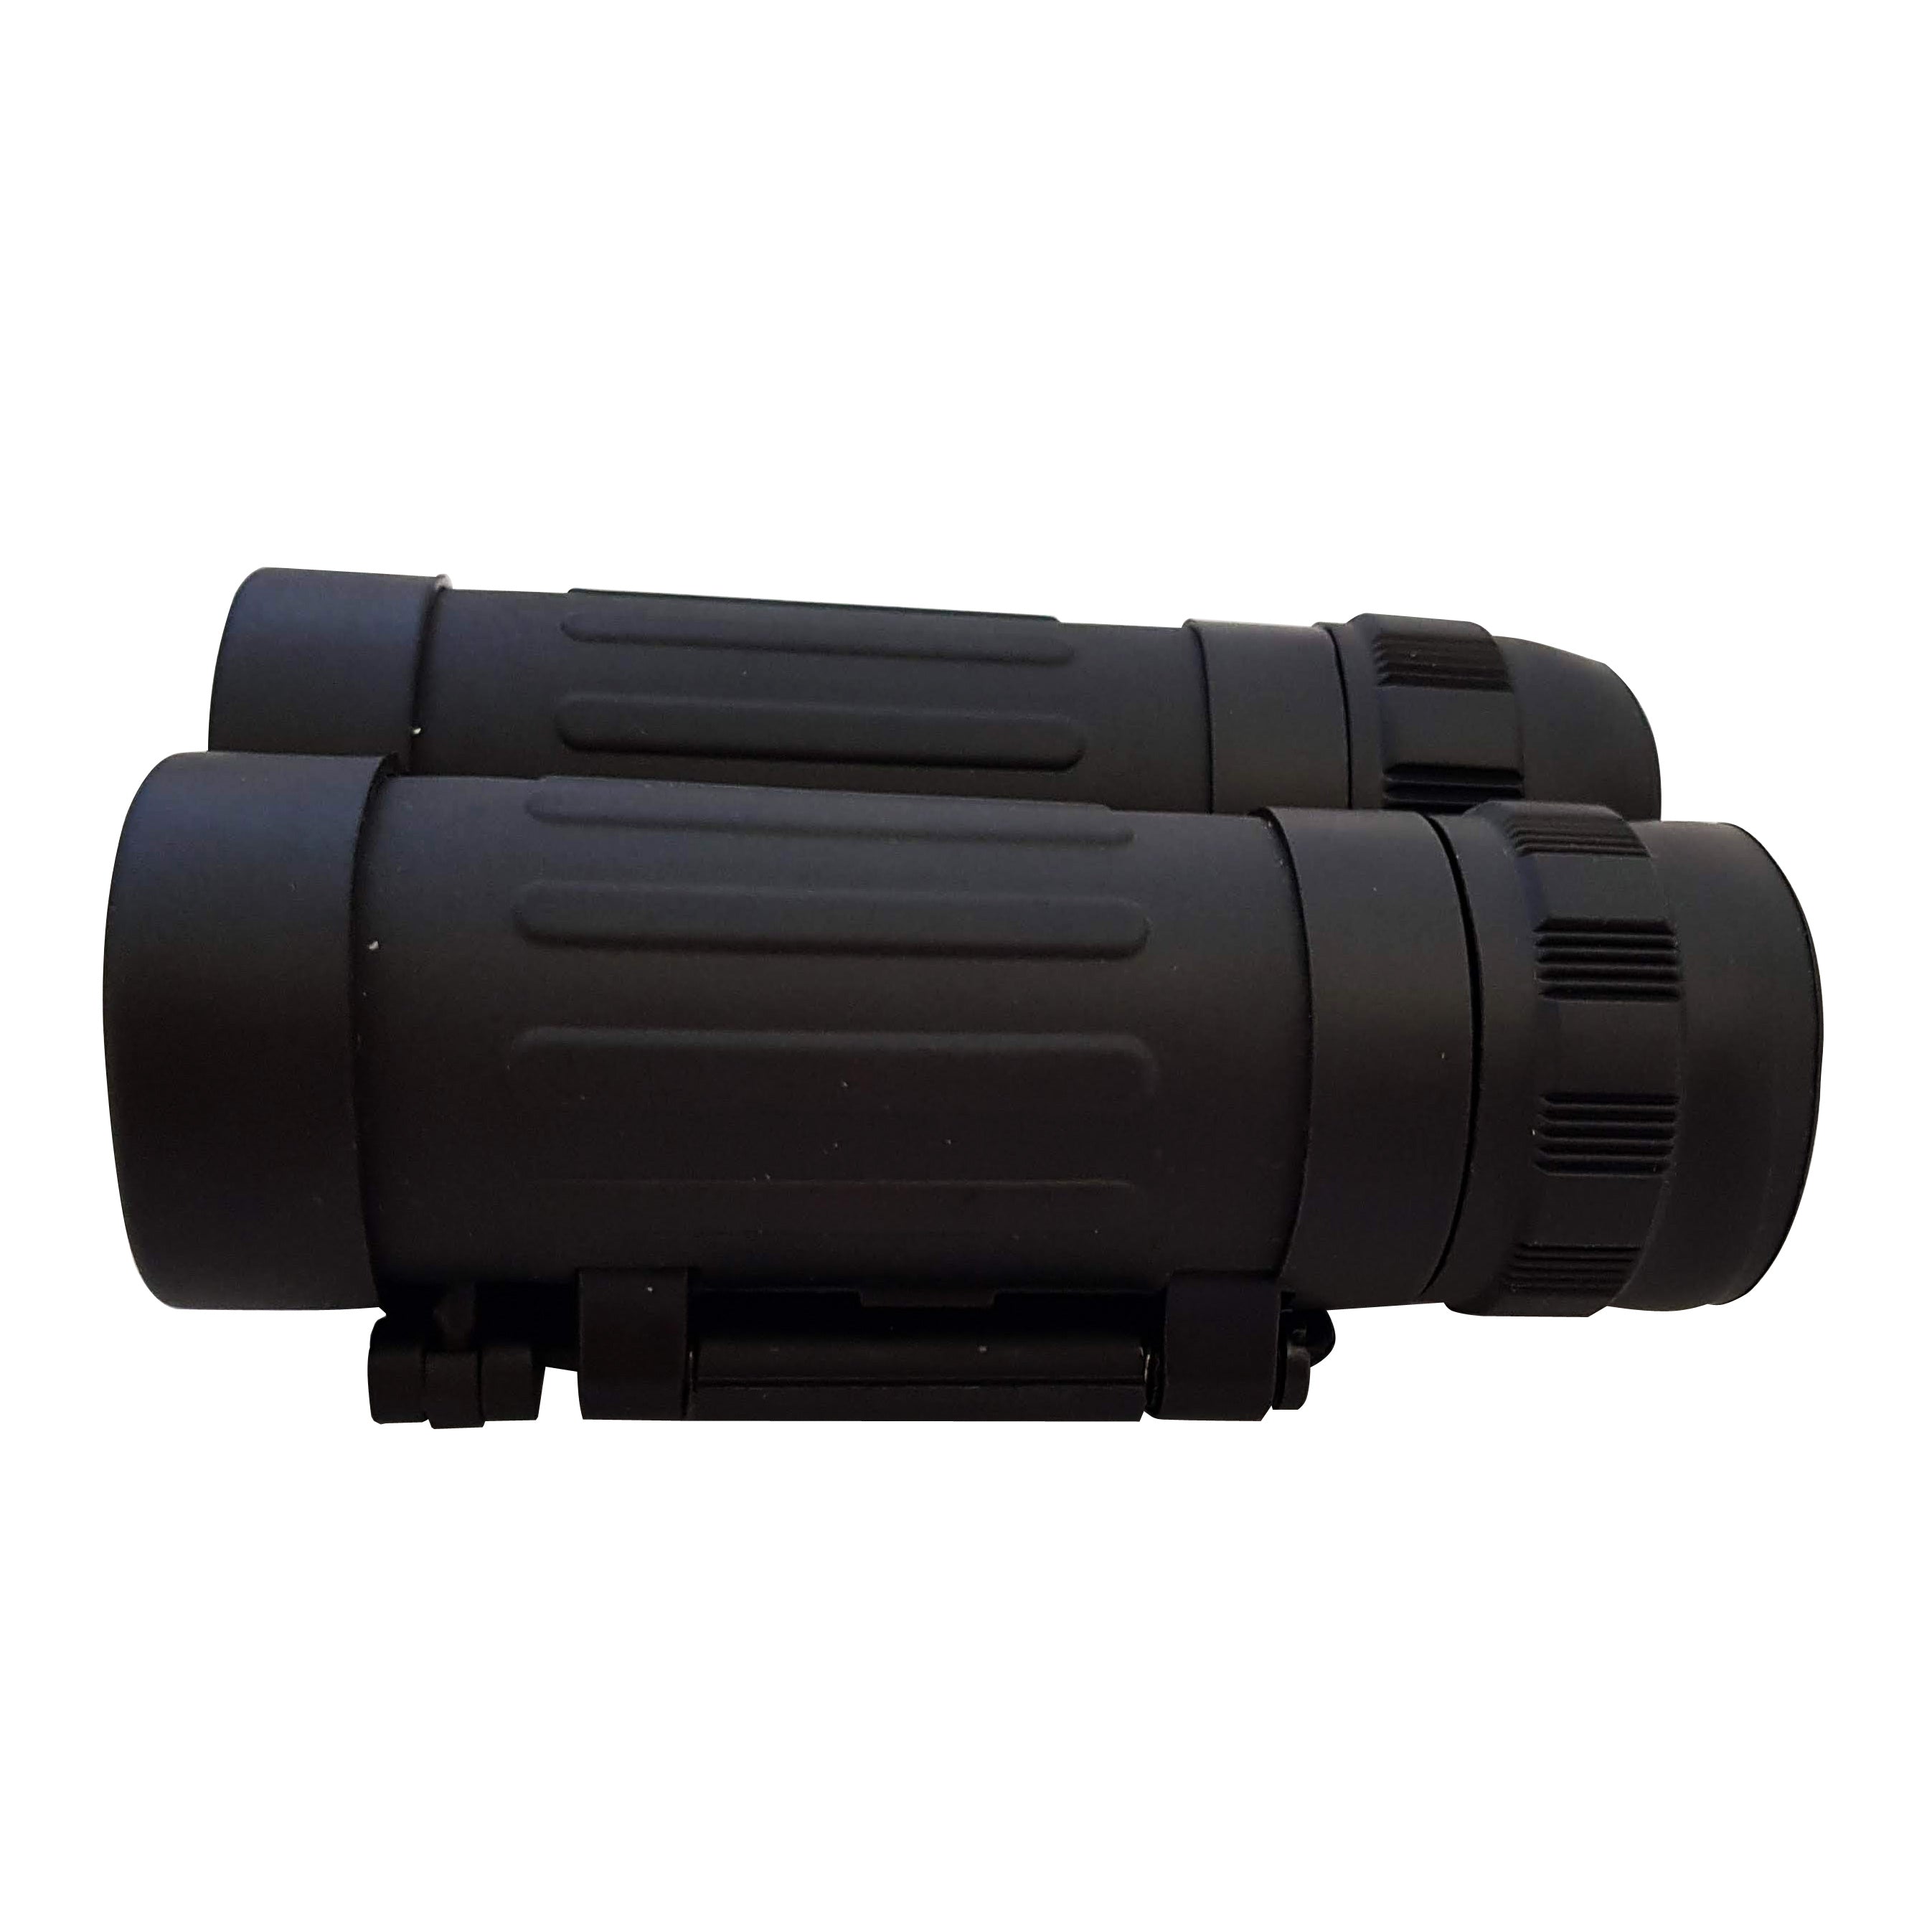 Inner Core Binoculars - 8 x 21